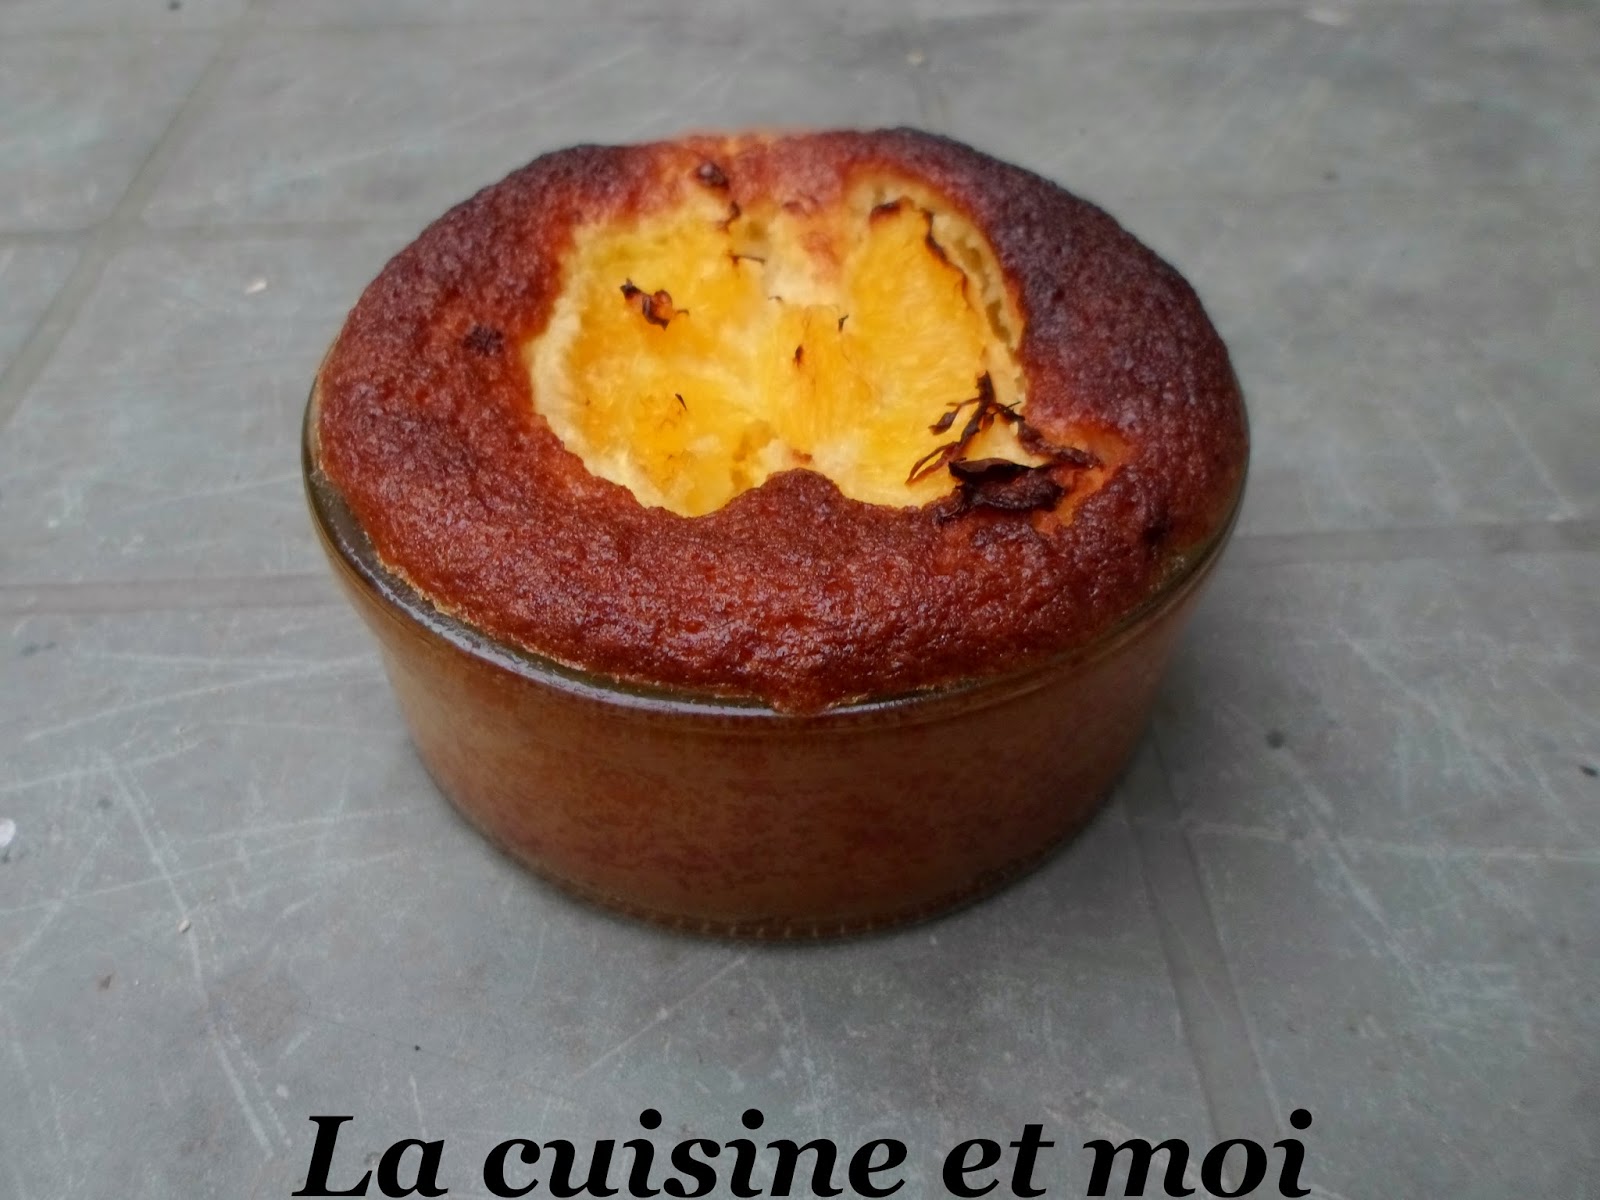 http://la-cuisine-et-moi.blogspot.fr/2014/11/gratin-doranges-aux-amandes.html